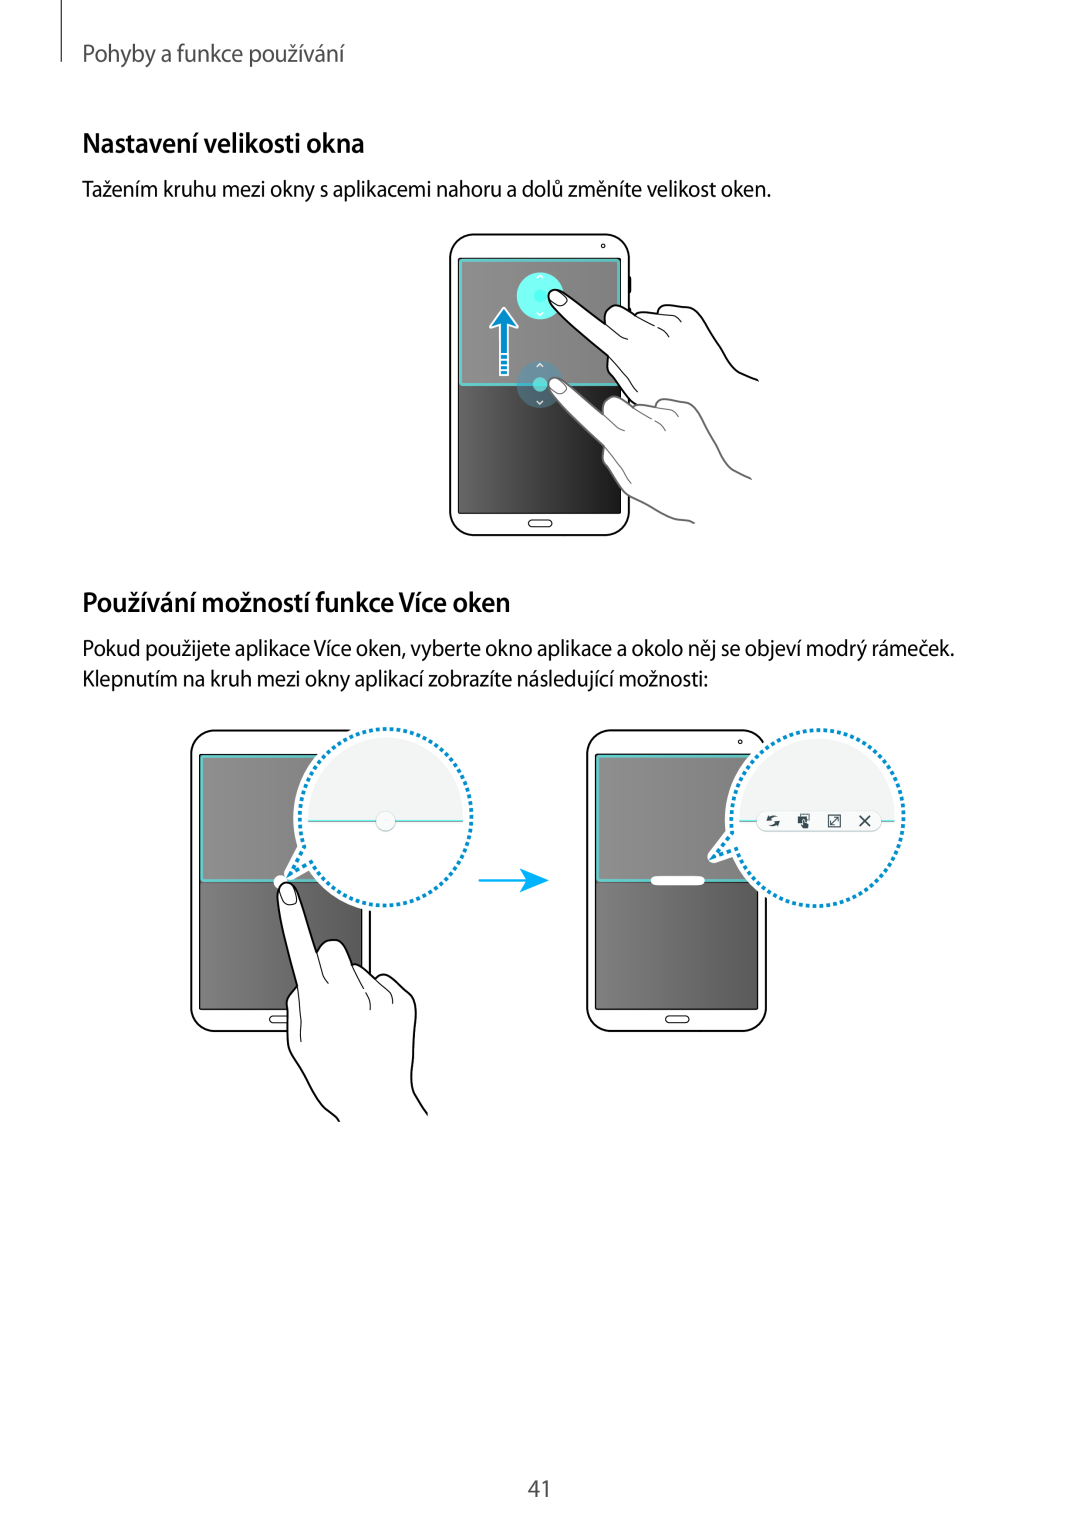 Samsung SM-T700NHAAAUT manual Nastavení velikosti okna, Používání možností funkce Více oken, Pohyby a funkce používání 